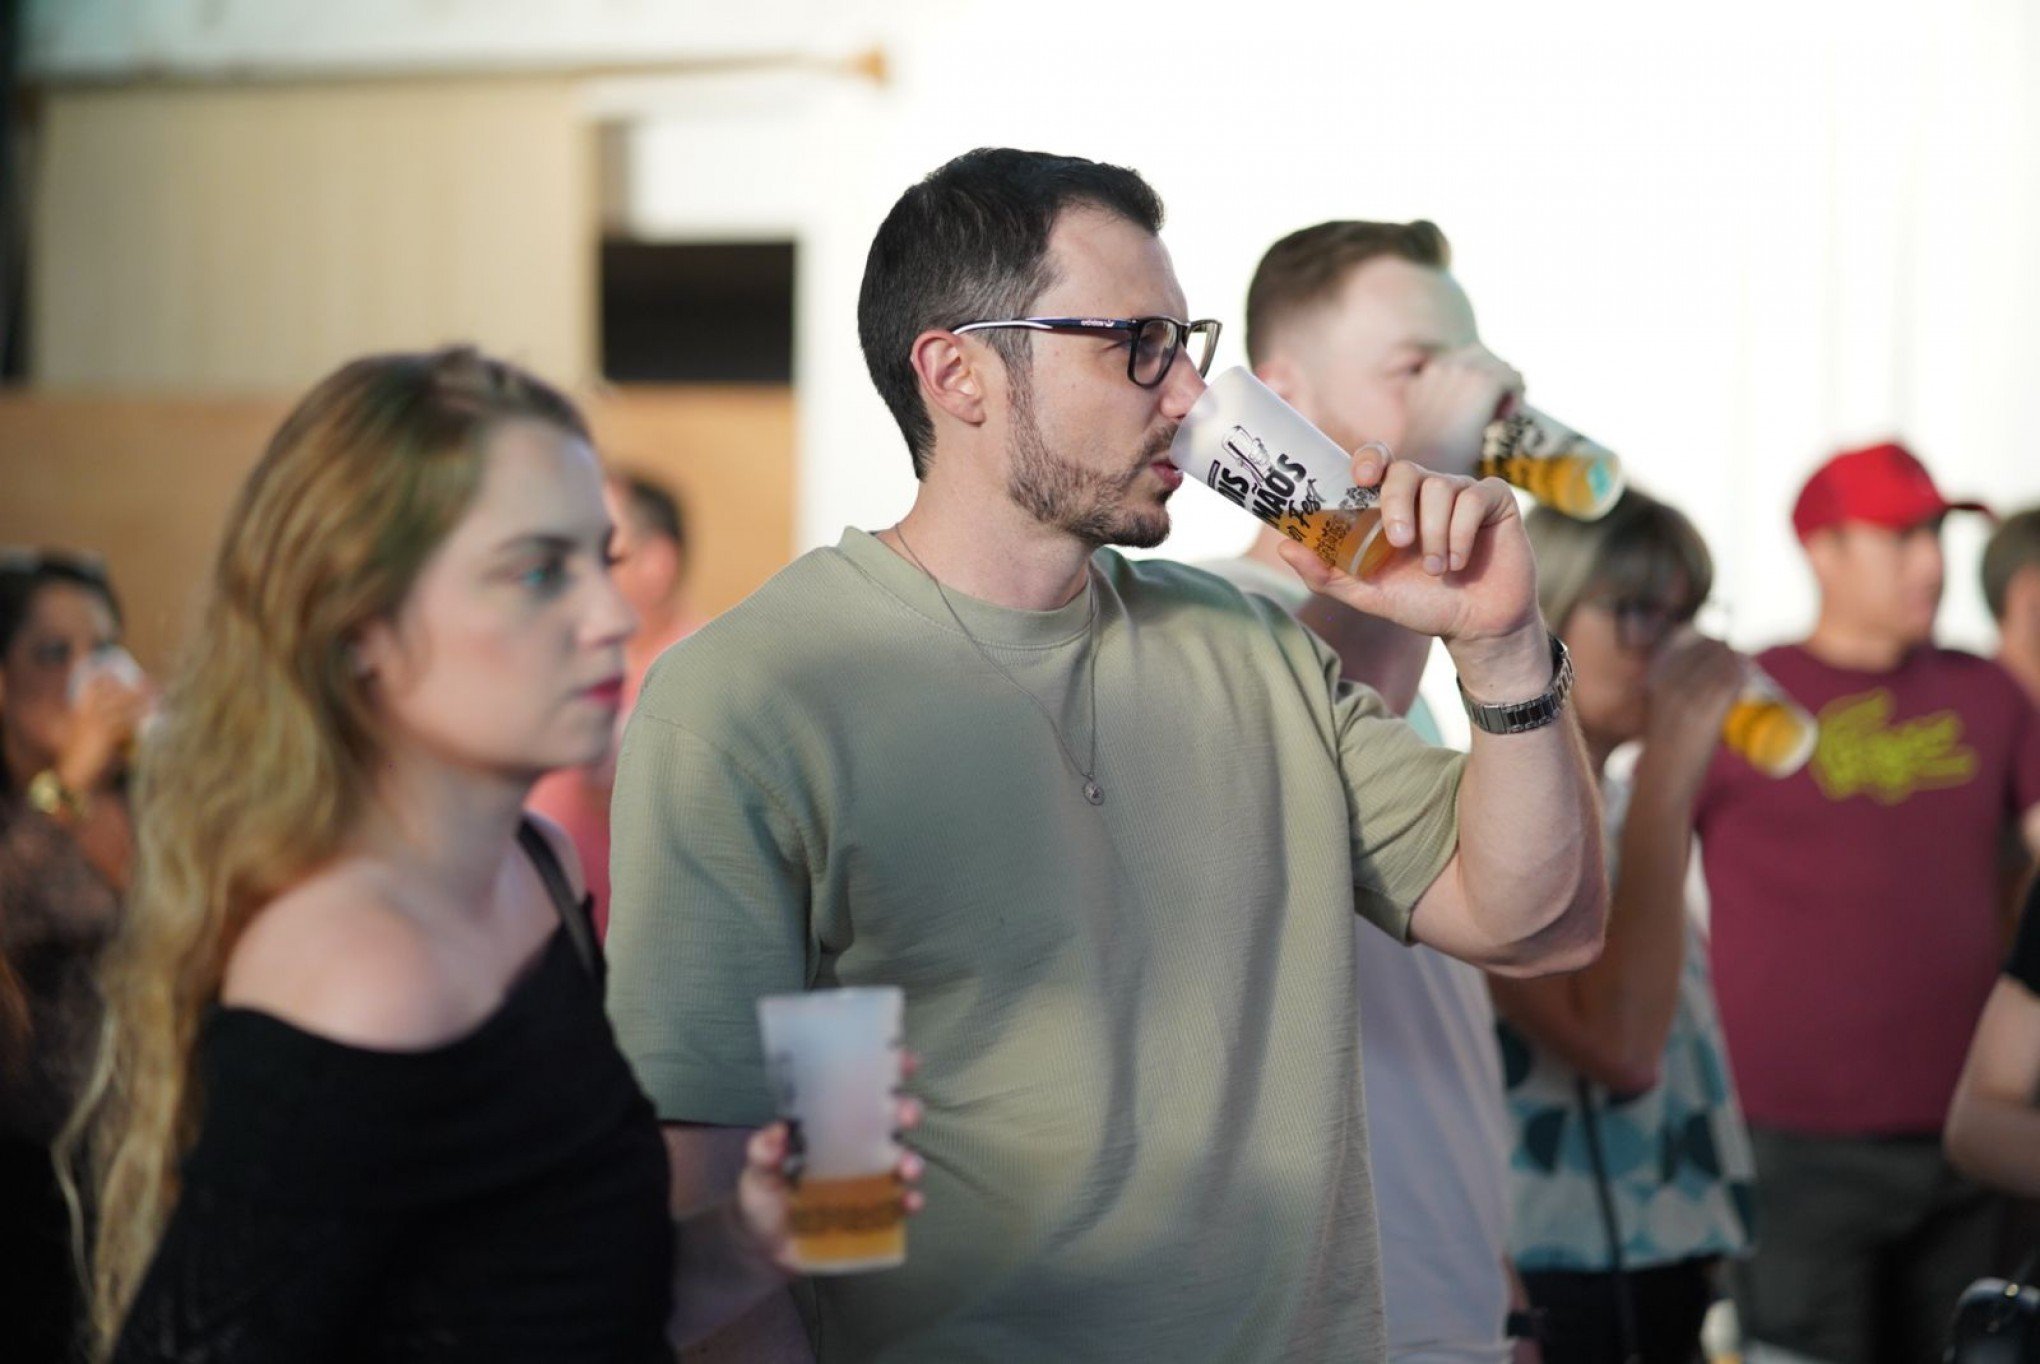 Com mais de 20 estilos de cerveja, Bier Fest espera 1,6 mil pessoas em Dois Irmãos